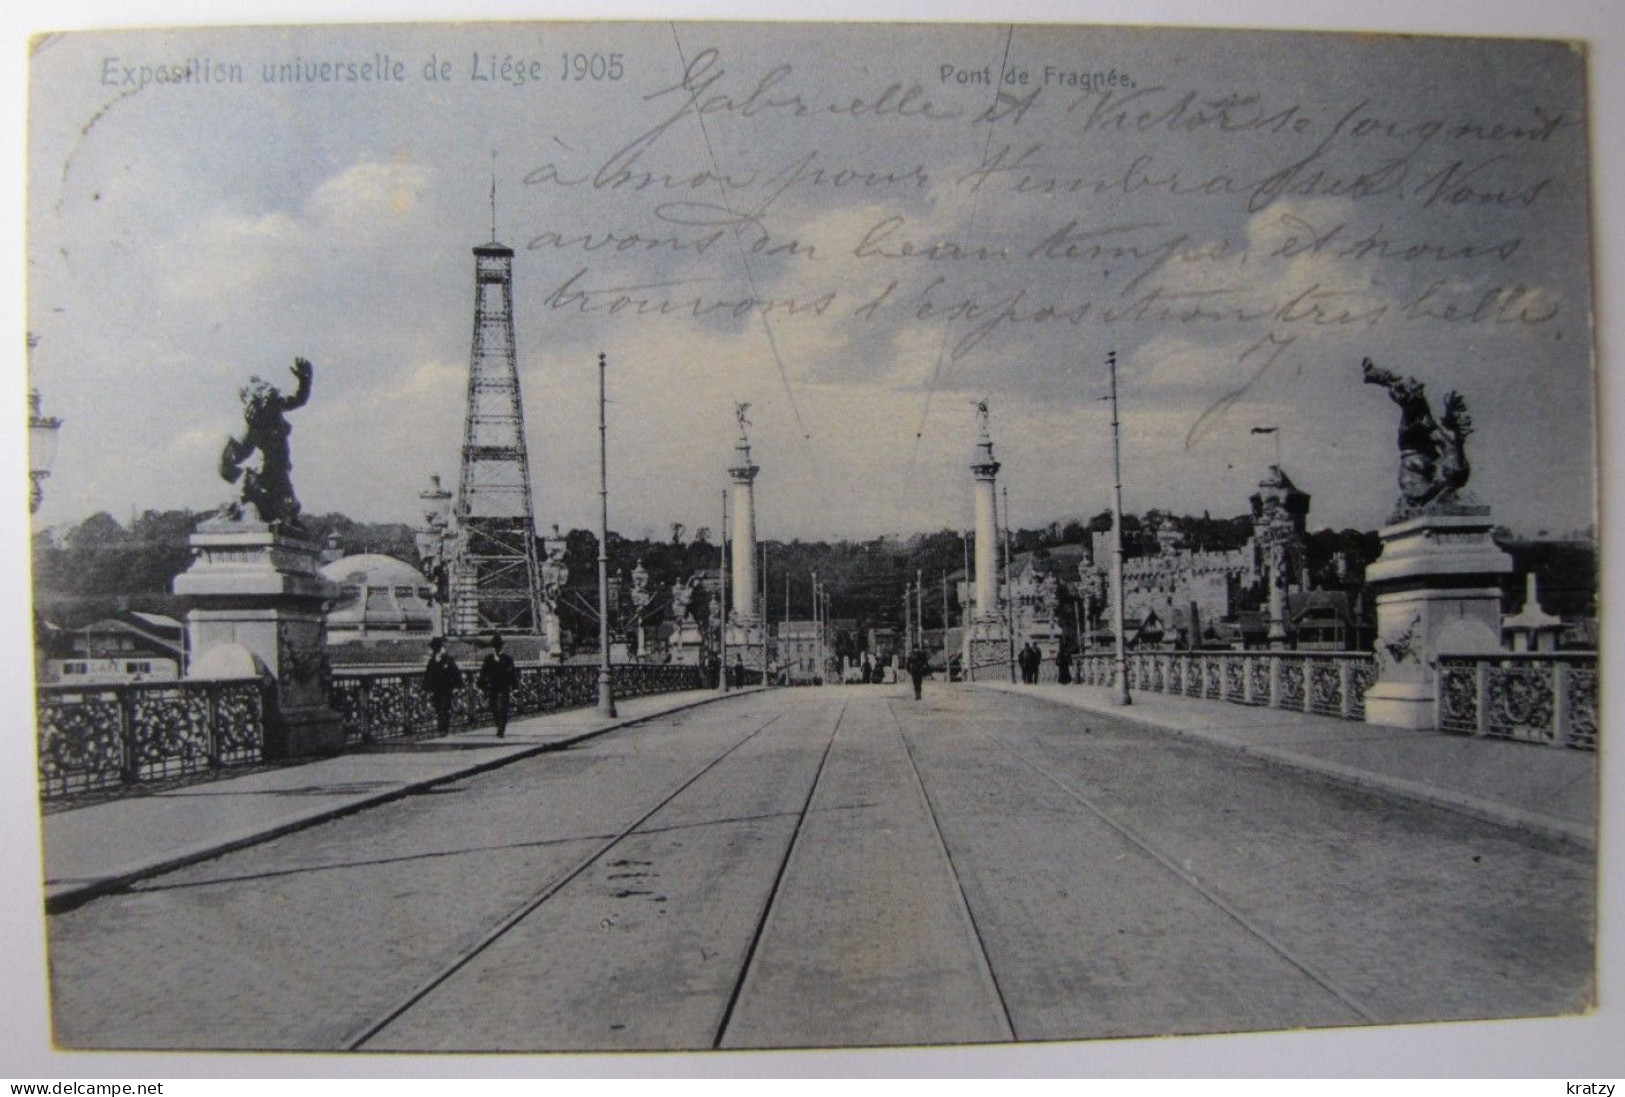 BELGIQUE - LIEGE - VILLE - Exposition Universelle De 1905 - Le Pont De Fragnée - Liege